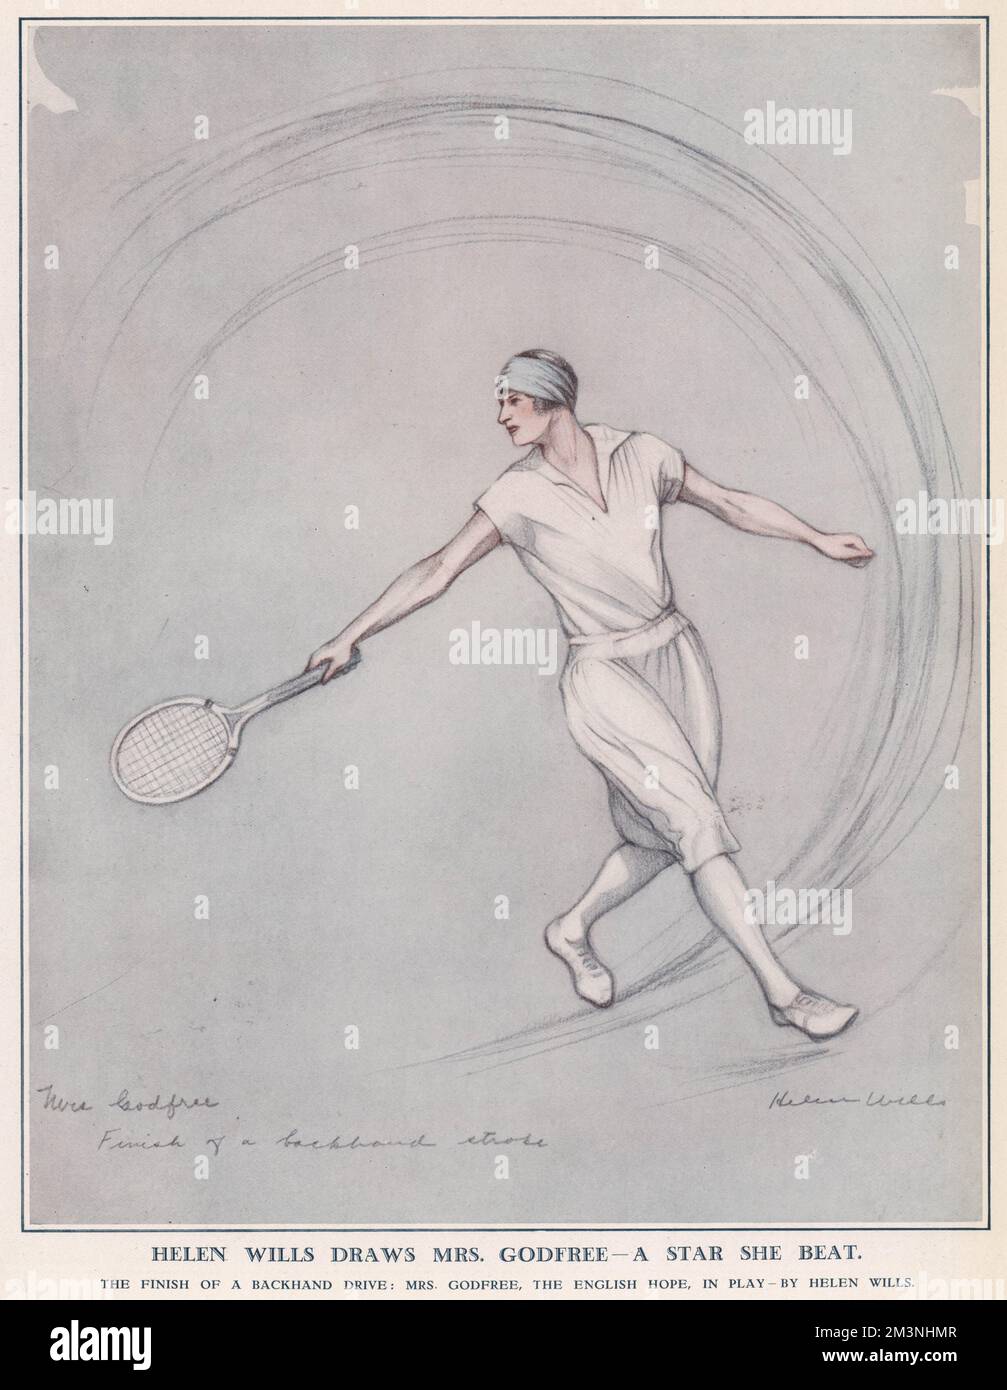 Une représentation de Mme Kitty Godfree (née McKane), joueur de tennis anglais, par un joueur rival, l'américaine Helen Wills. Les deux apparaissaient à Wimbledon. Godfree vient de terminer une conduite à main levée. Date: 1927 Banque D'Images